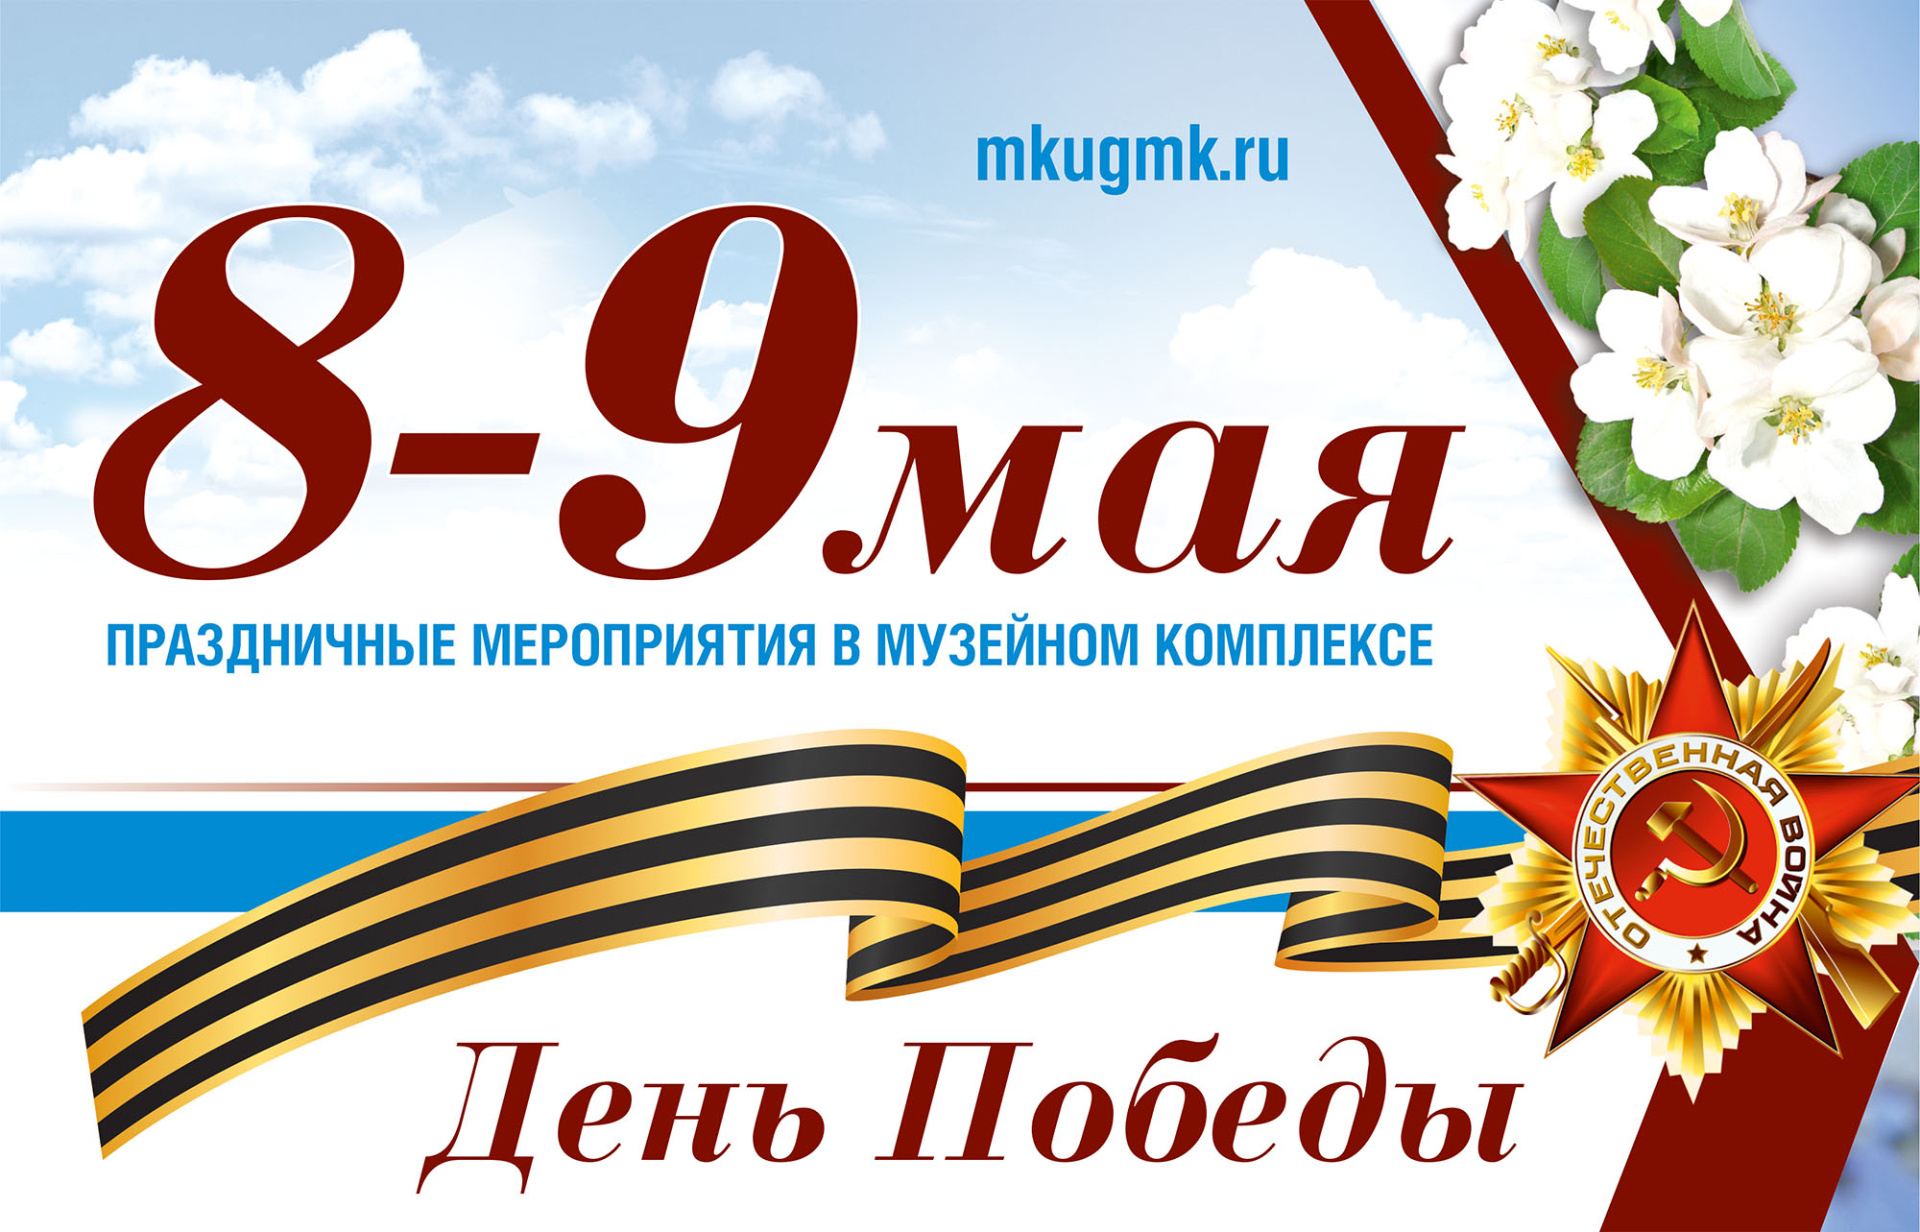 Музейный комплекс приглашает на празднование 77-й годовщины Победы в Великой Отечественной войне